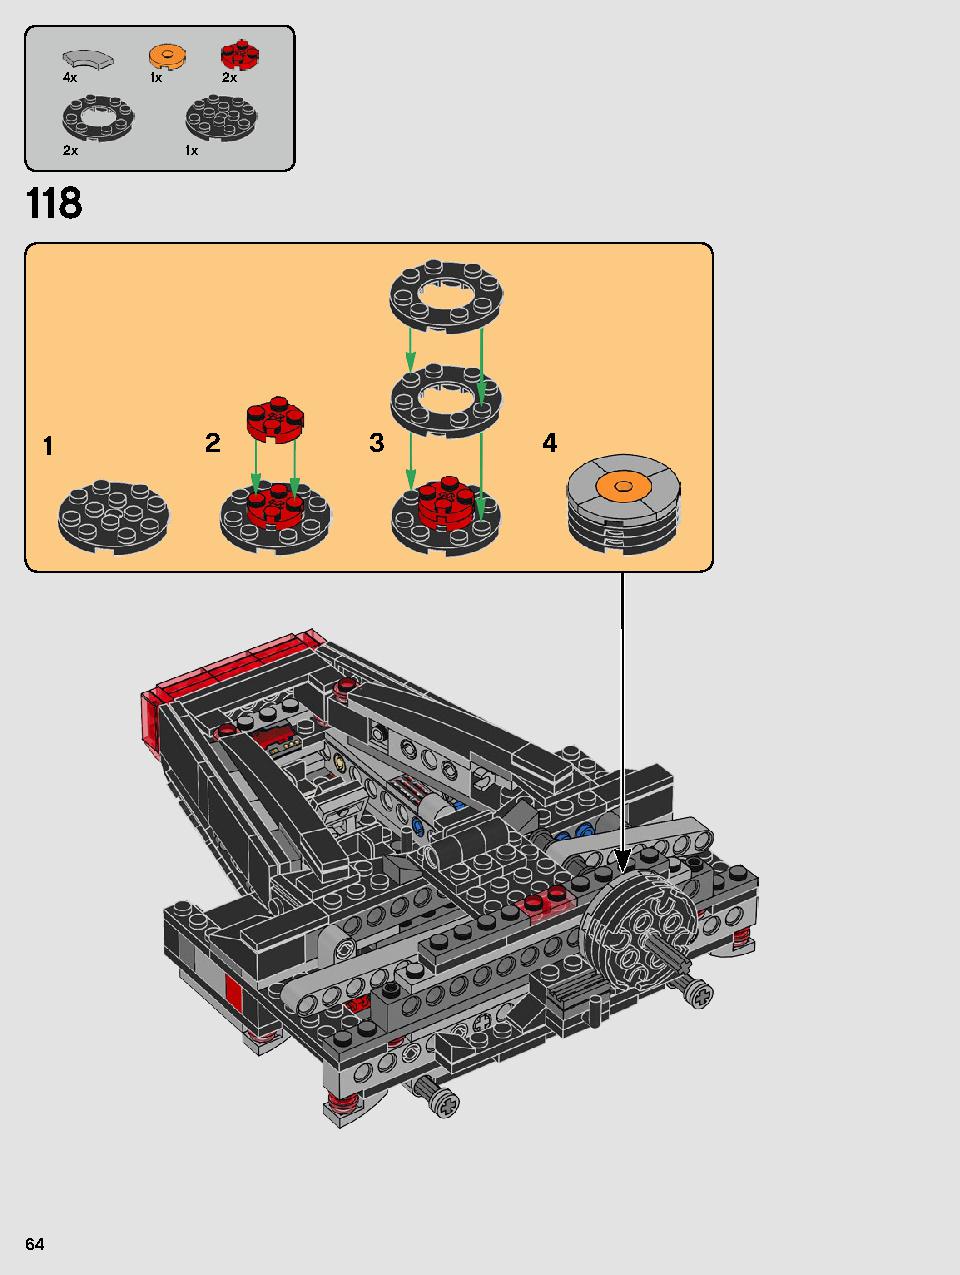 스타워즈 카일로 렌의 셔틀™ 75256 레고 세트 제품정보 레고 조립설명서 64 page